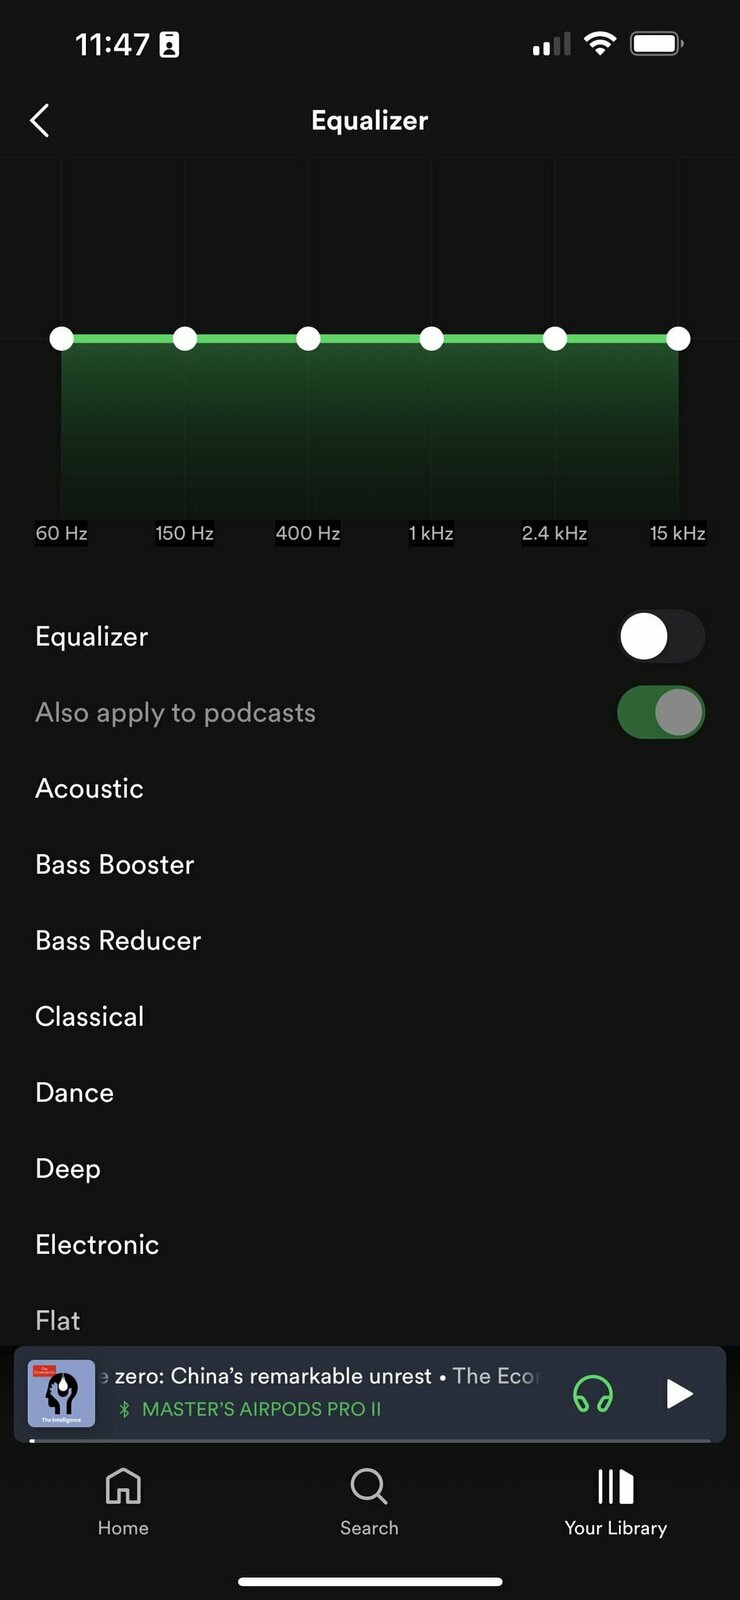 Ahora puede decidir si desea aplicar la configuración del ecualizador a los podcasts en Spotify.